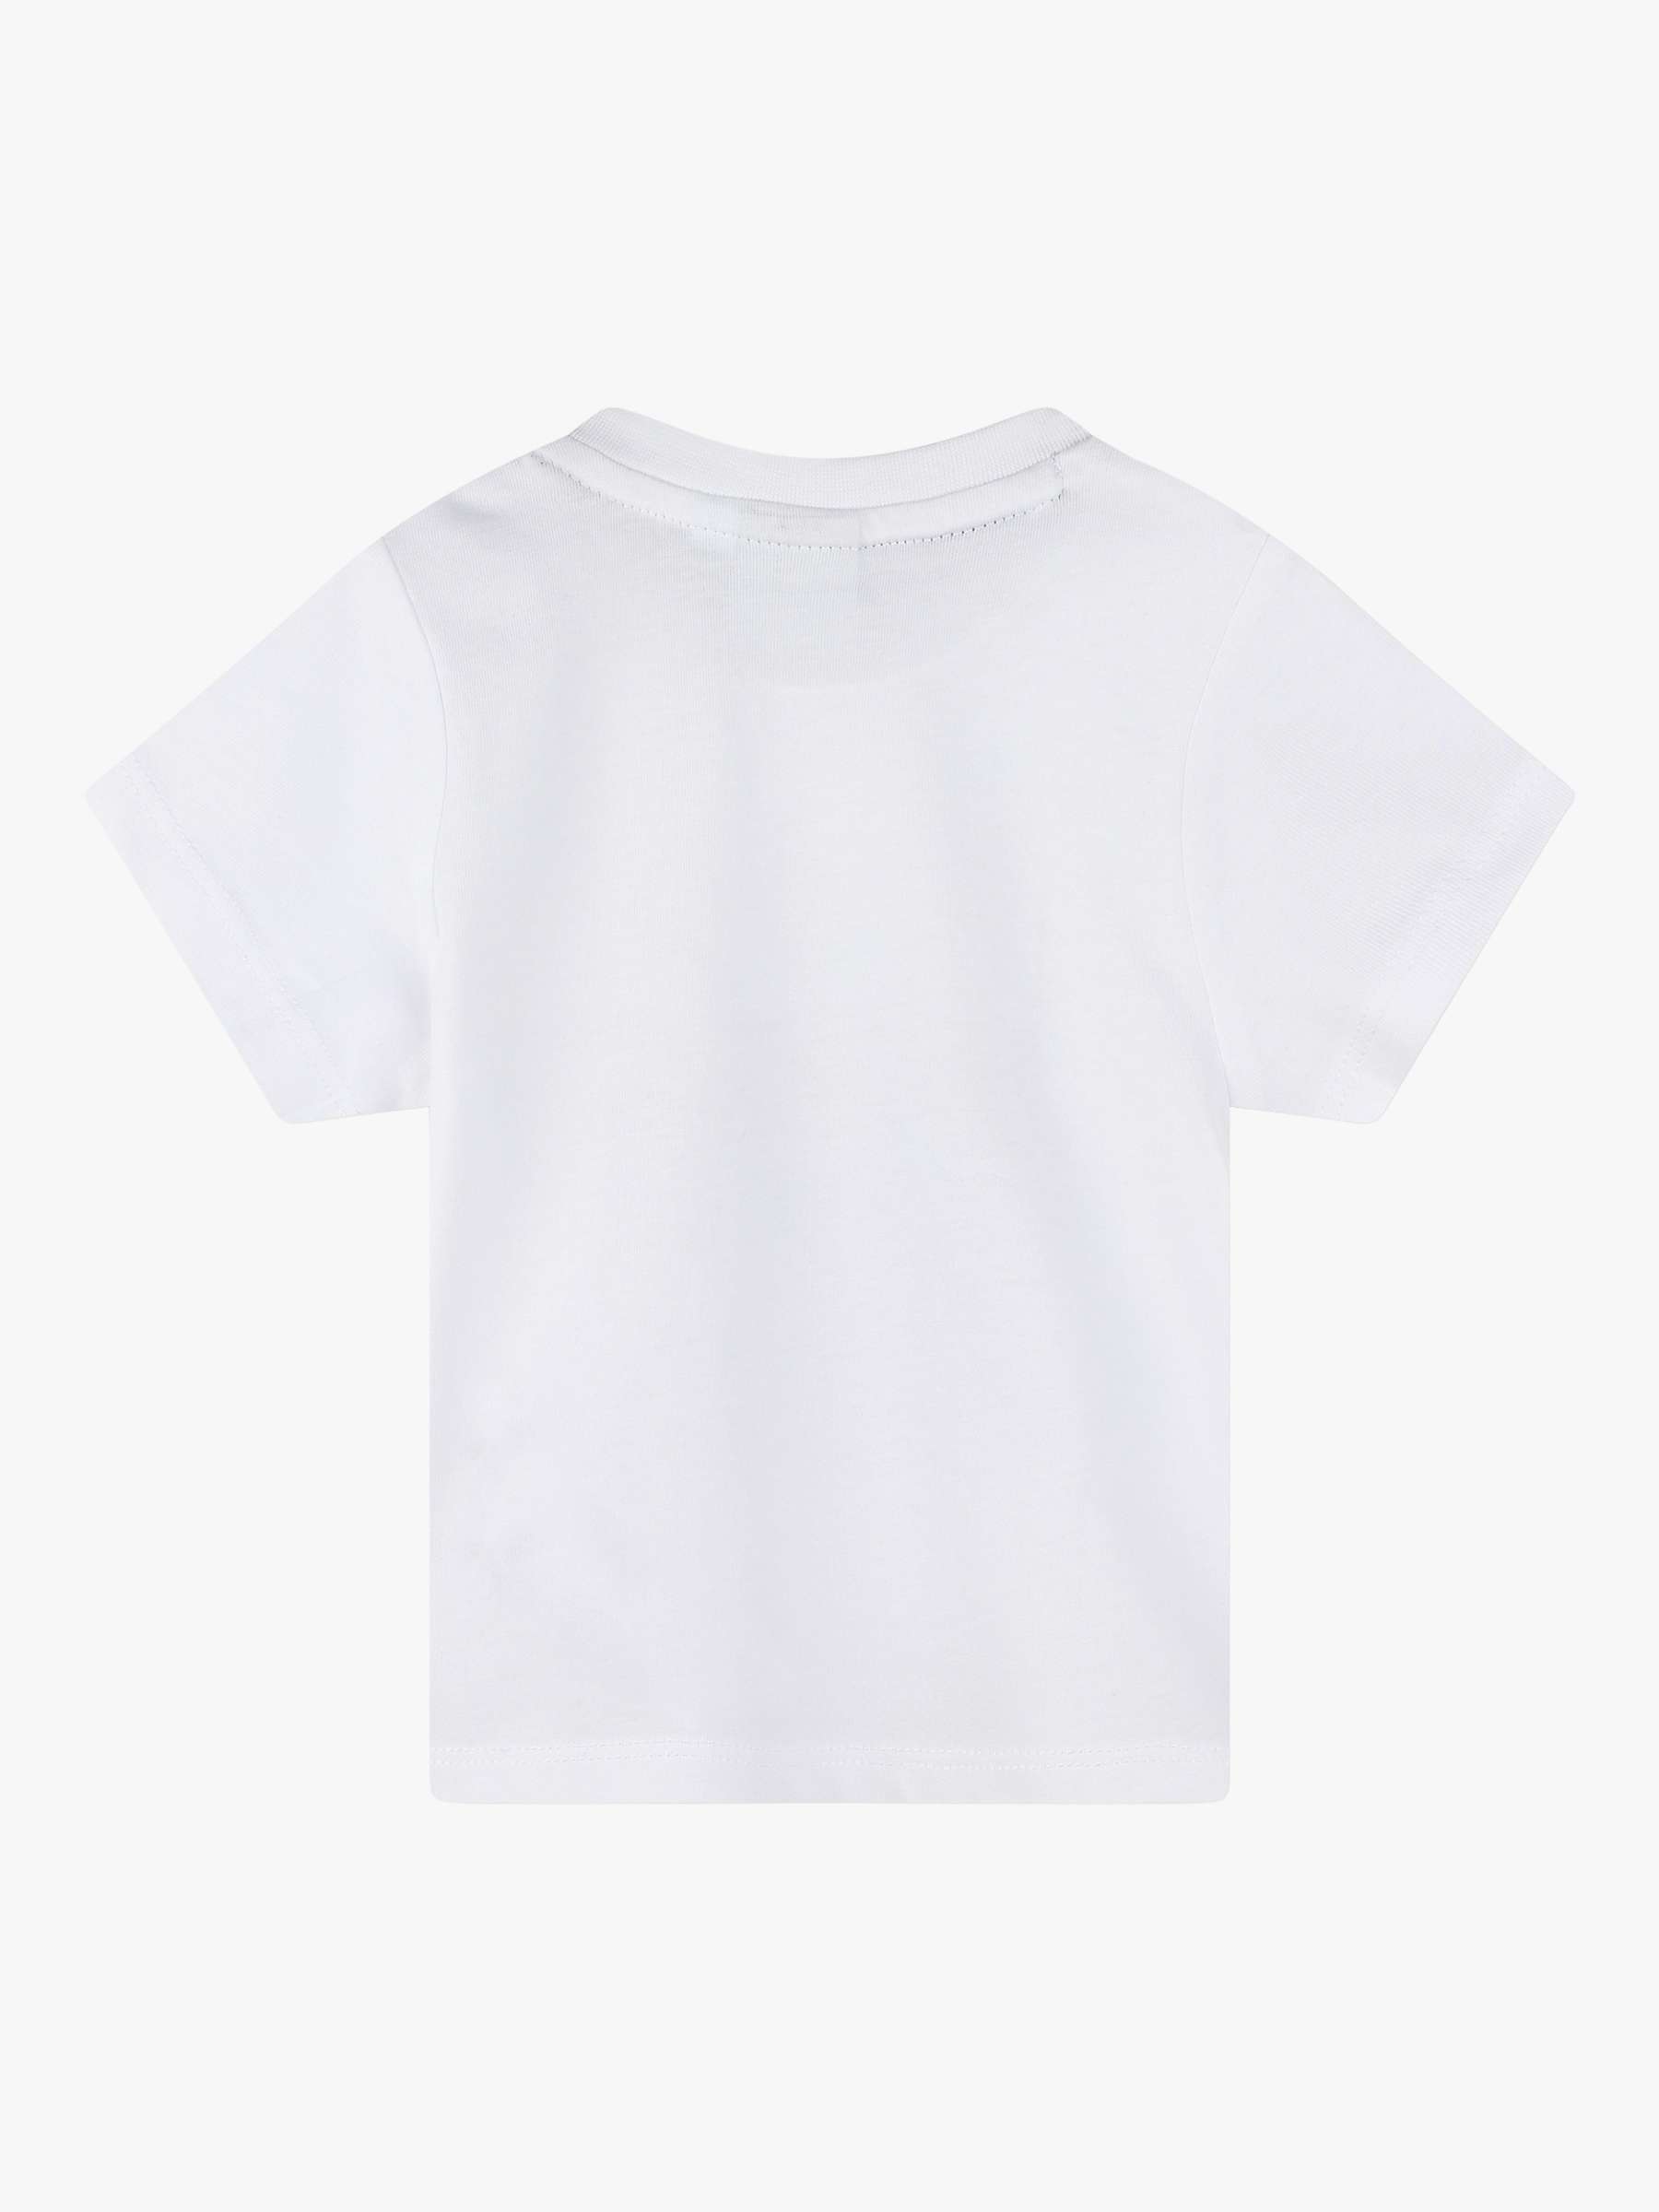 Buy HUGO BOSS BOSS Baby Logo Print Short Sleeve T-Shirt, White/Multi Online at johnlewis.com